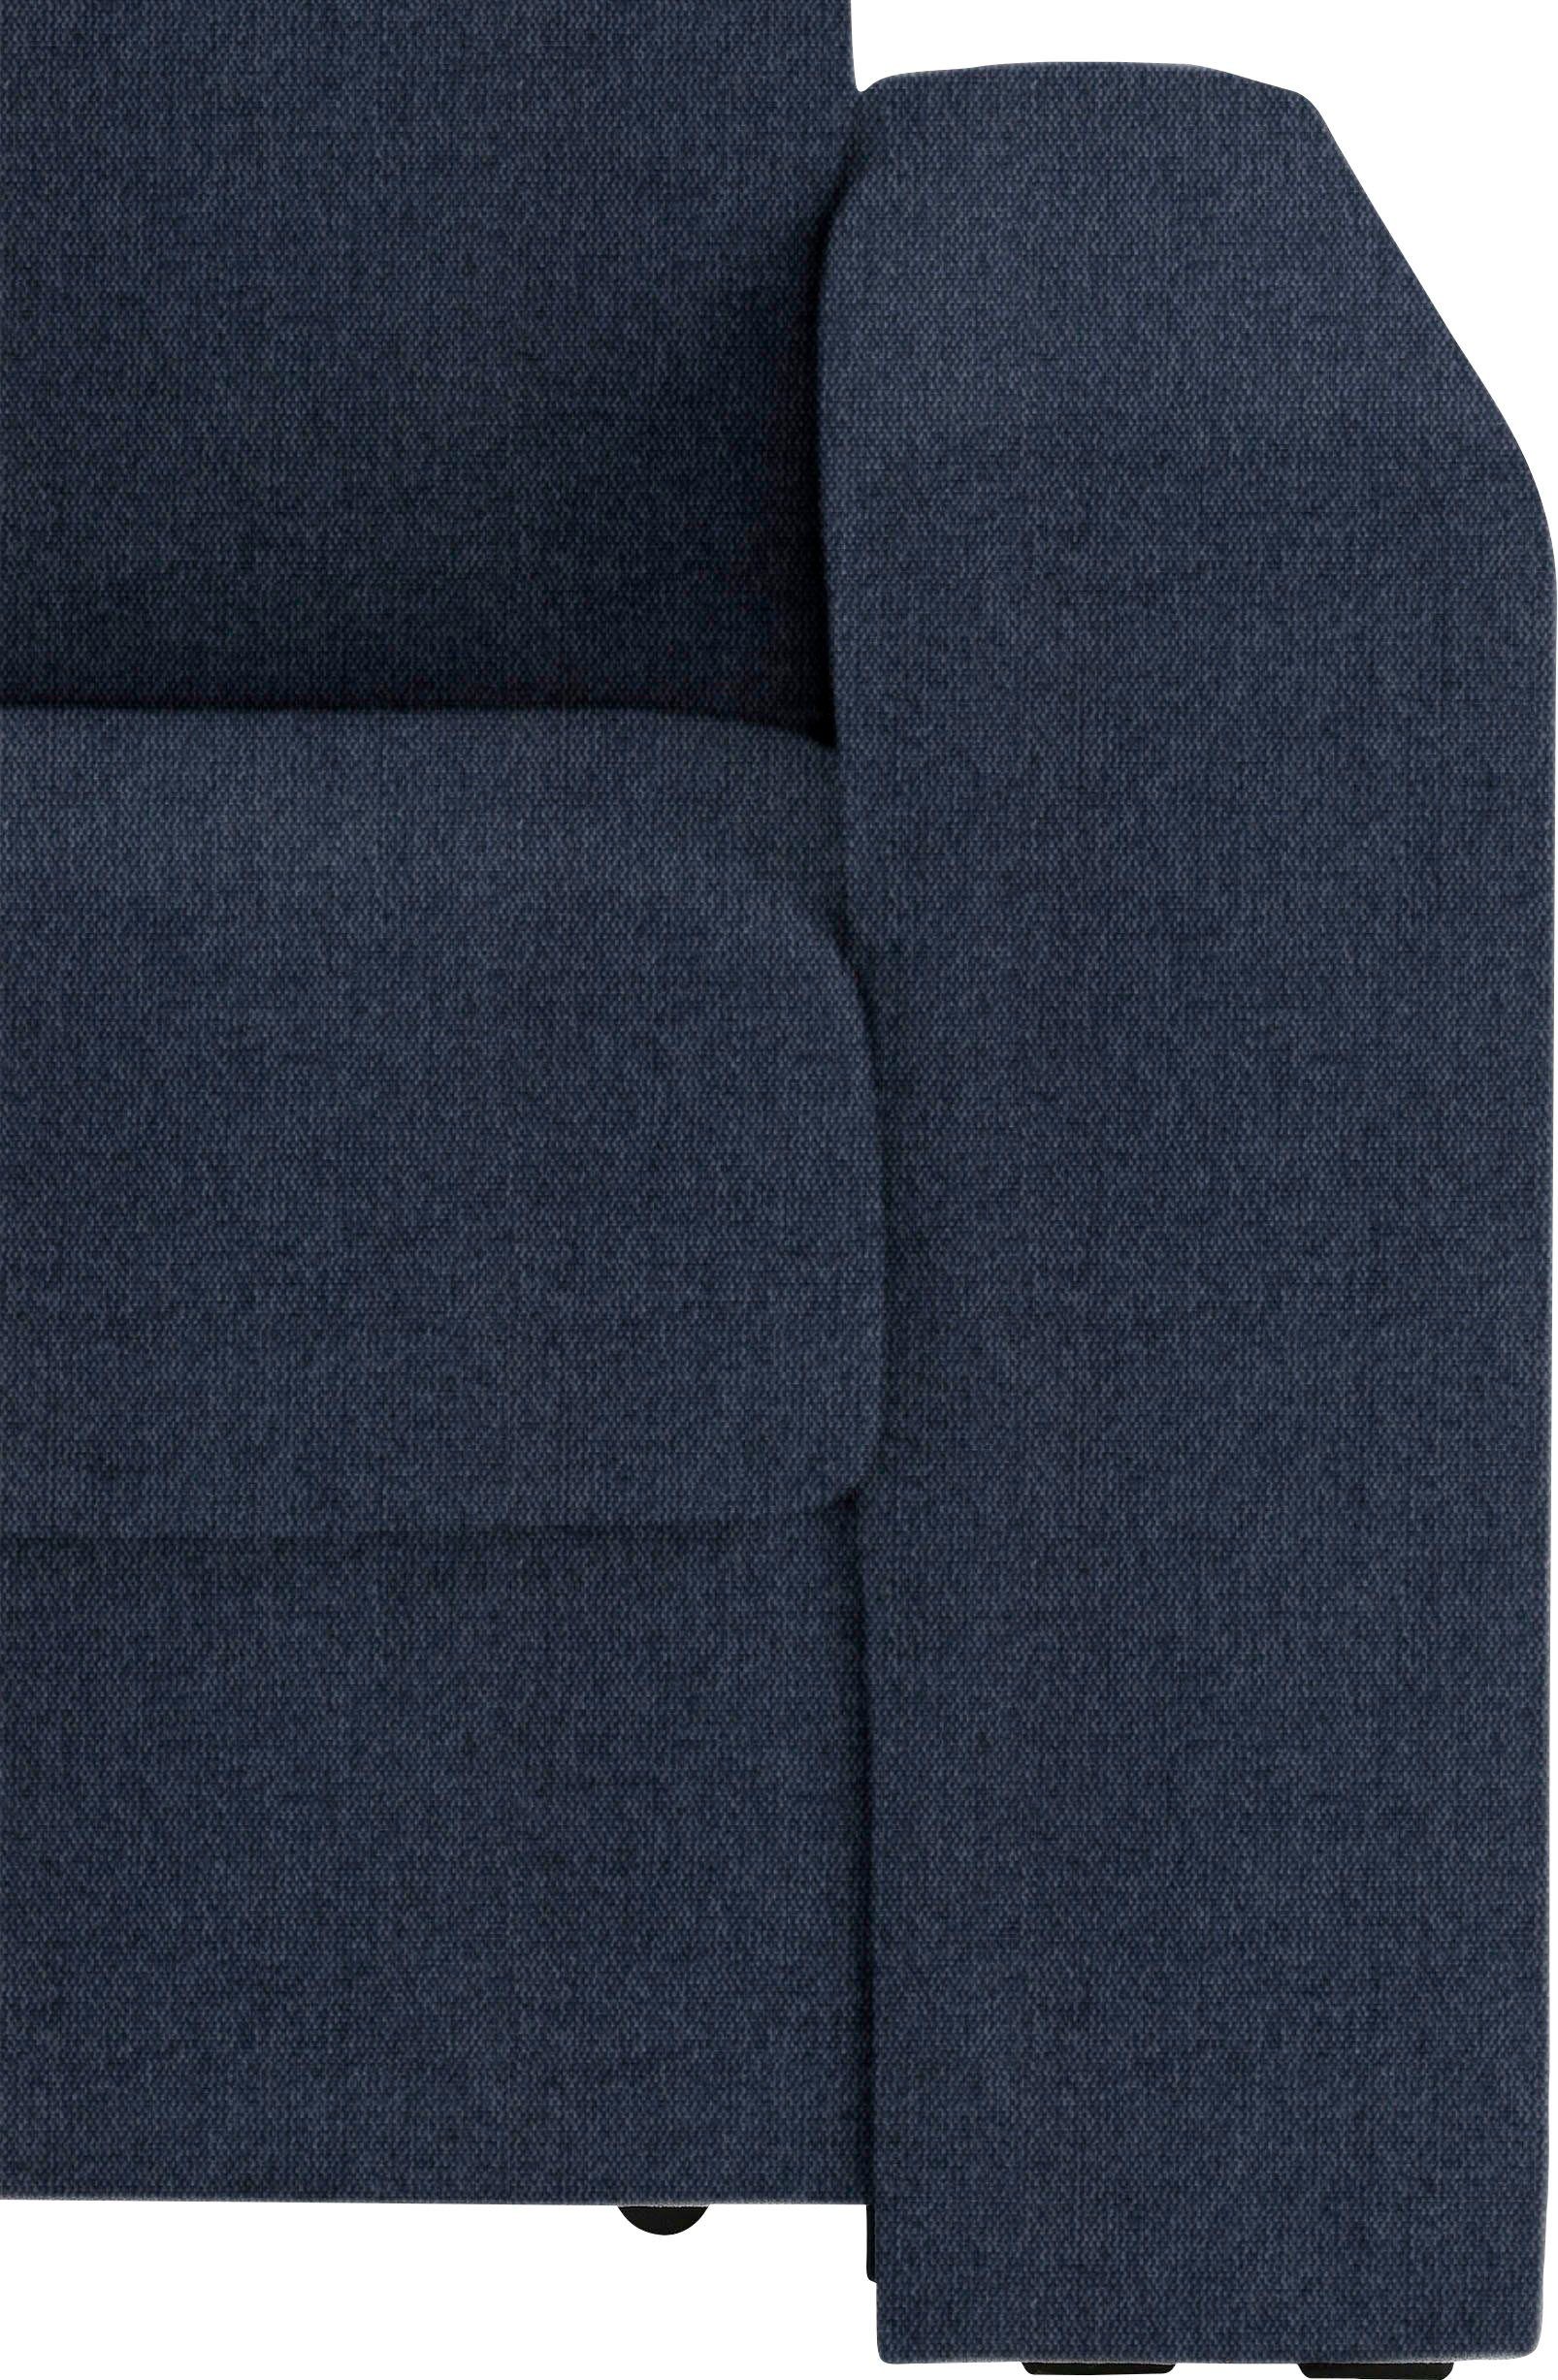 Dauerschlaffunktion, mit Unterfederung, Sessel Liegemaße ca Home 83x198 cm Roma, affaire